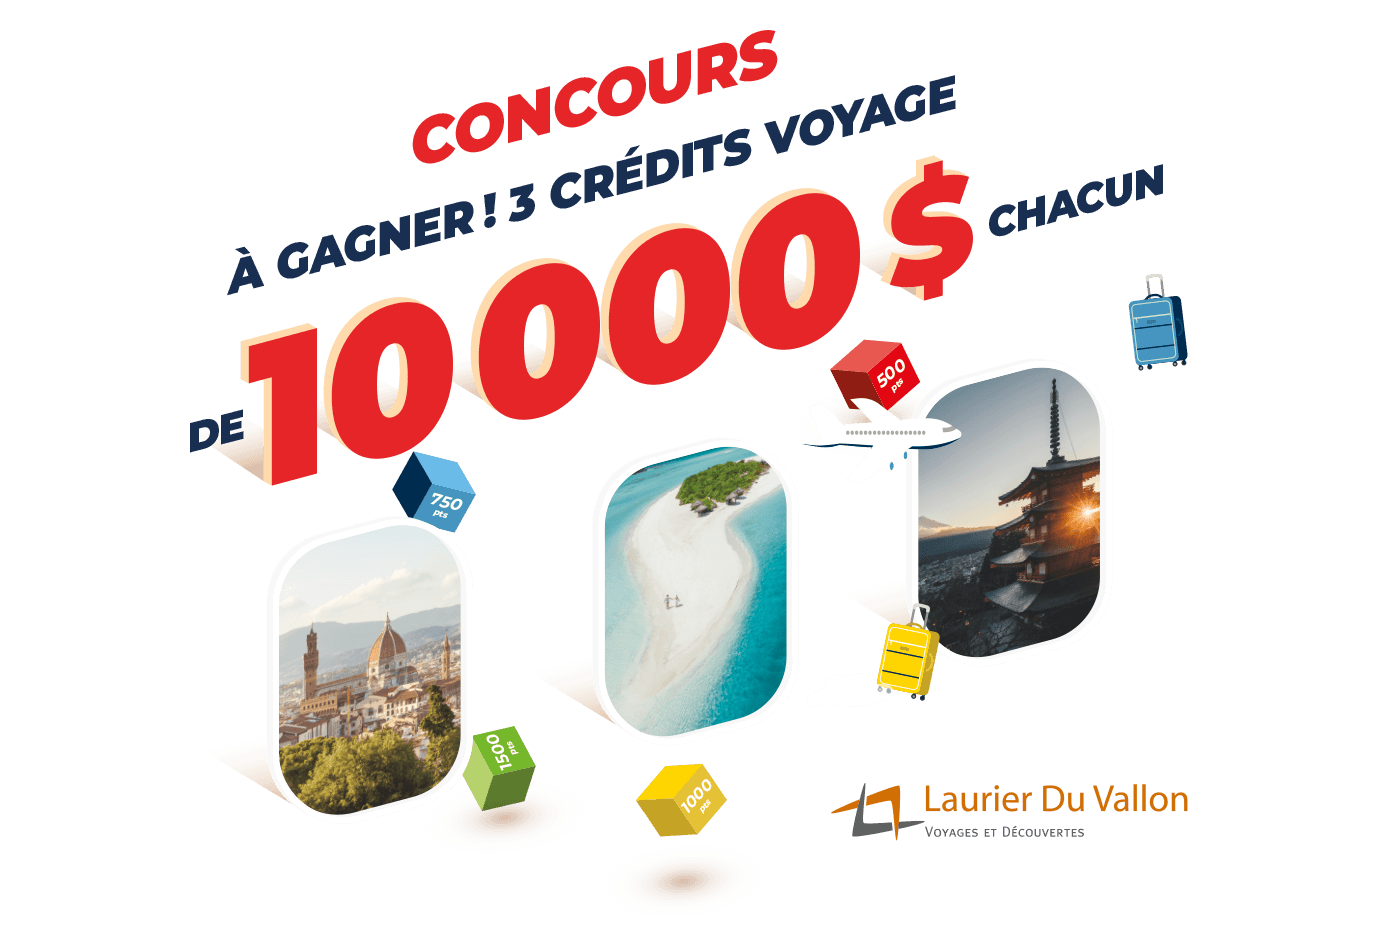 Concours 3 crédits voyage de 10 000$ chacun valides chez Laurier Du Vallon